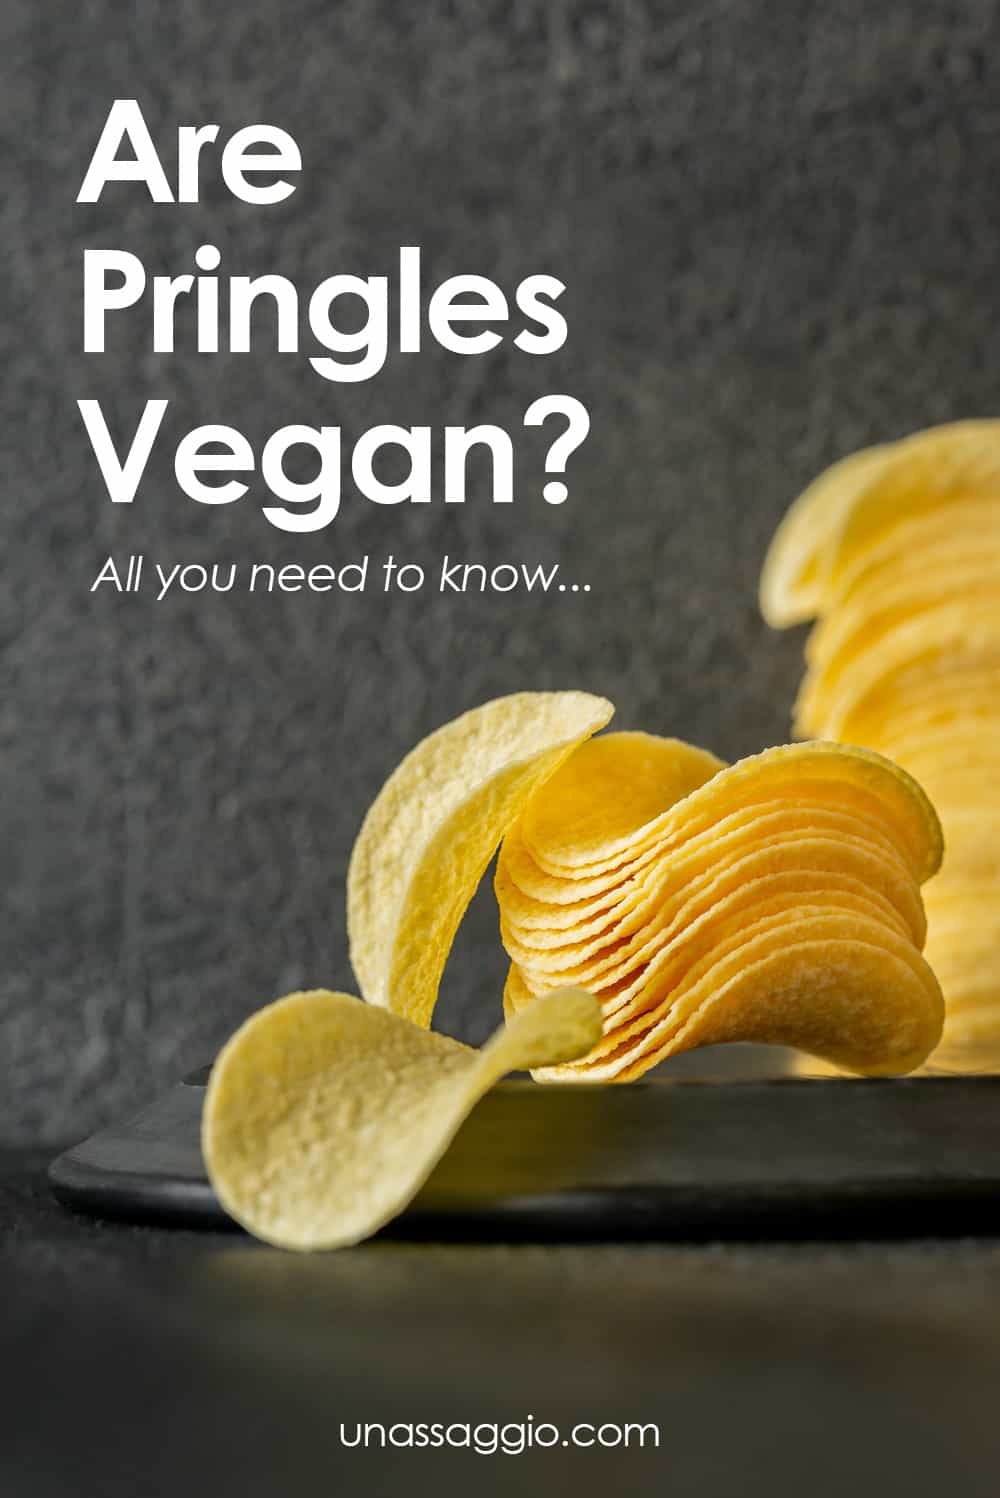 Are Pringles Vegan?